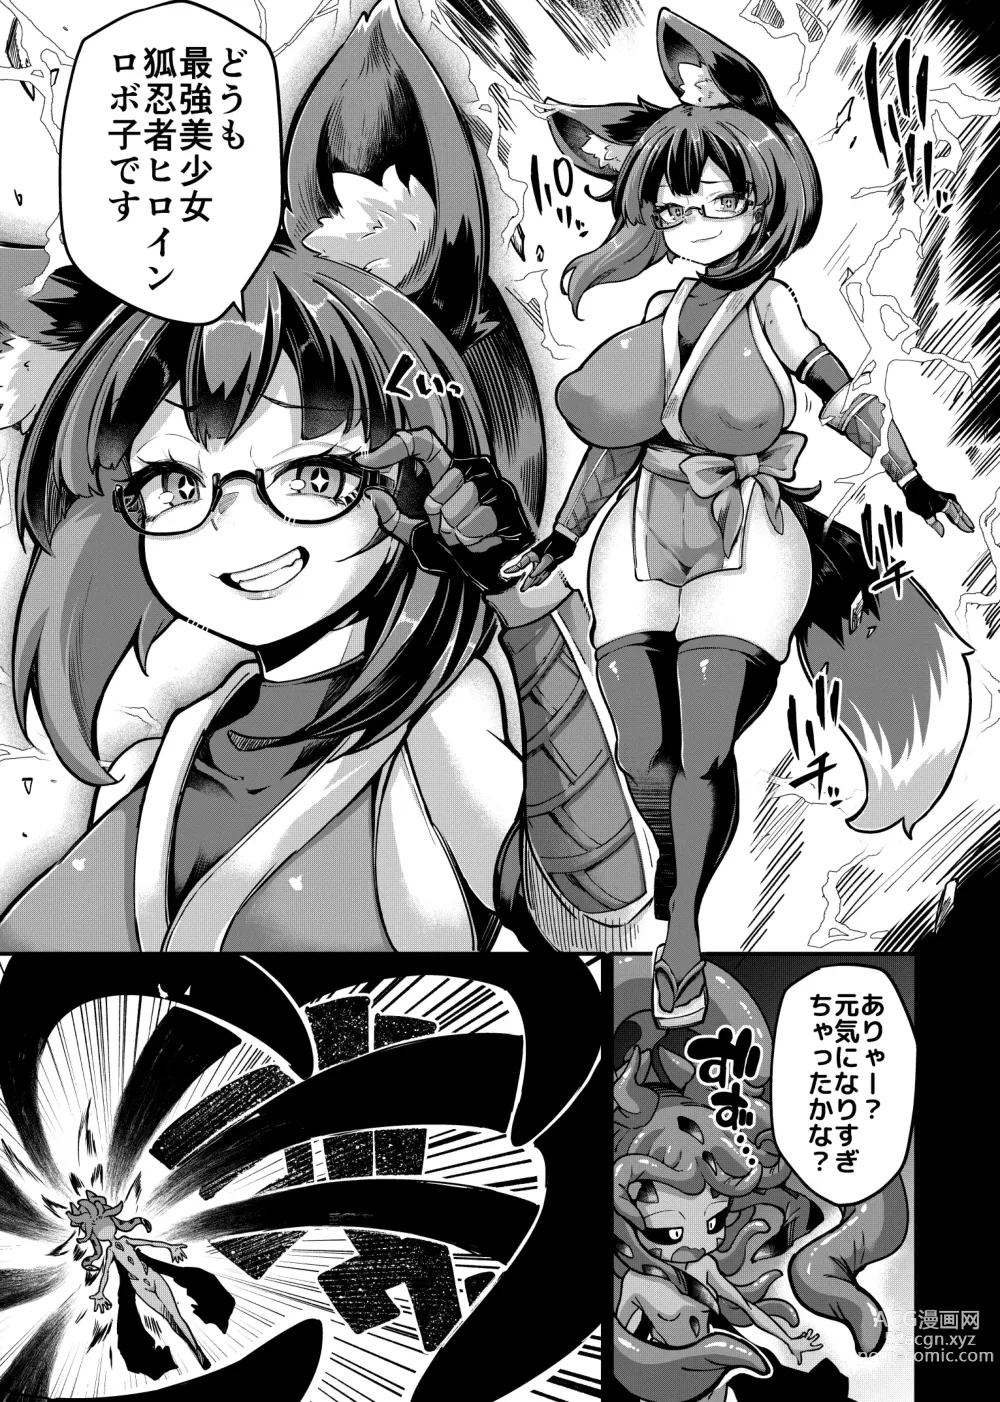 Page 10 of doujinshi Rizinetta VS jishin dungeon 2